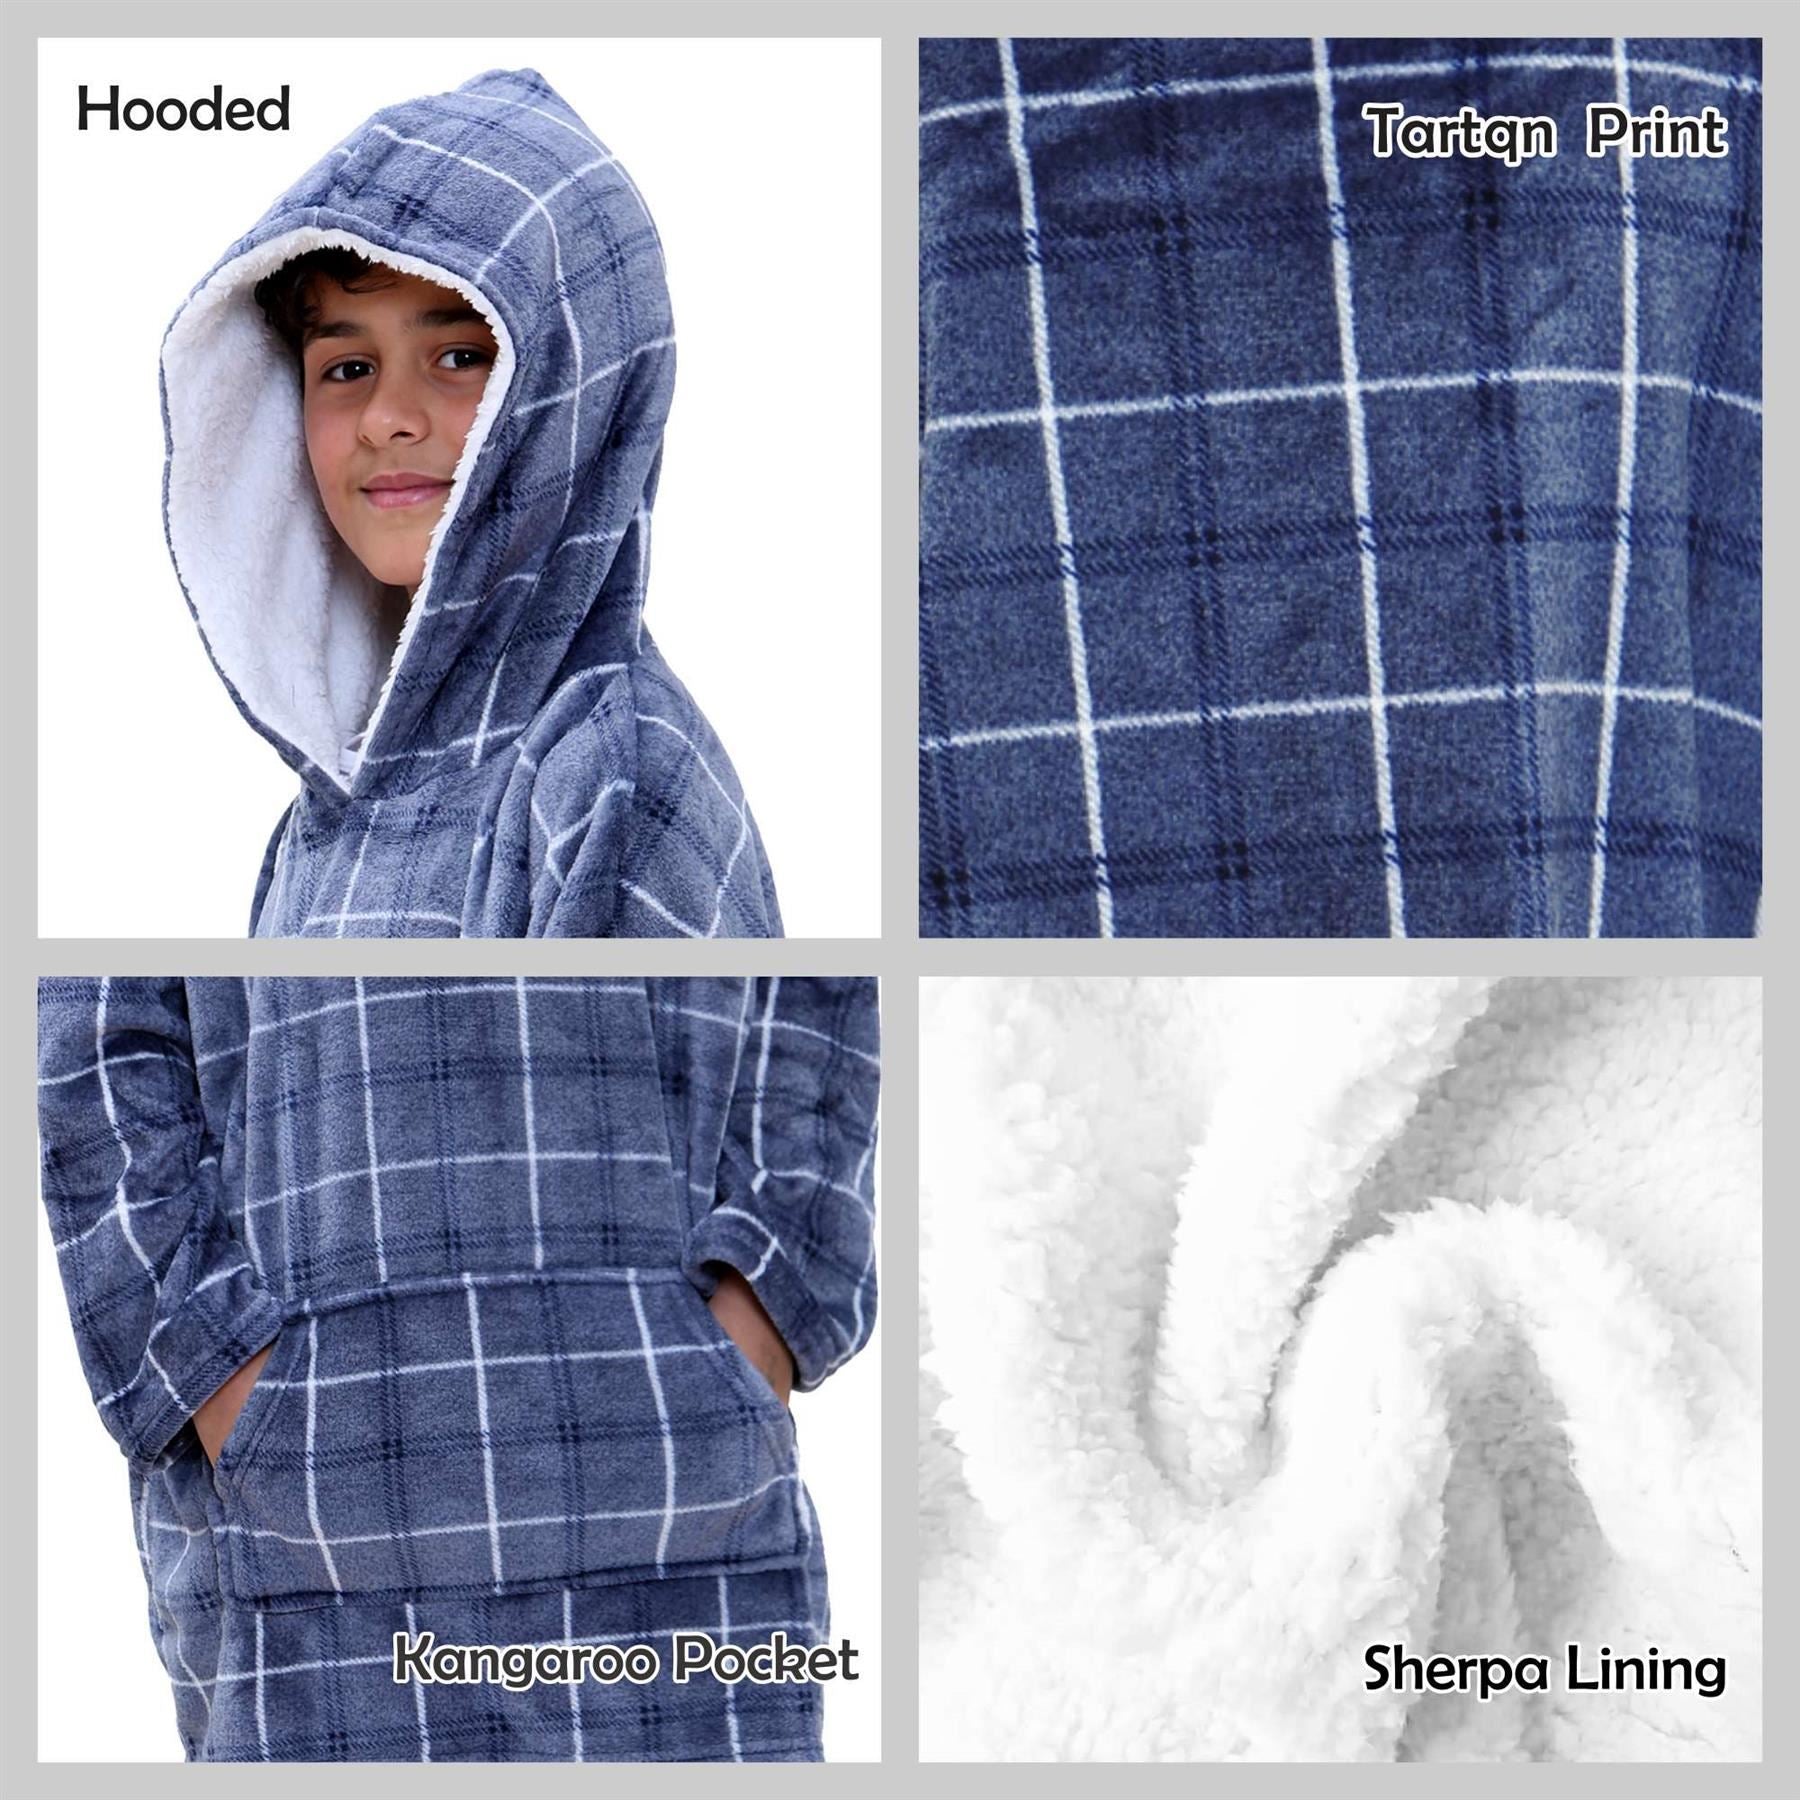 Kids Unisex Oversized Hoodie Snuggle Blue Tartan Printed Fleece Blanket